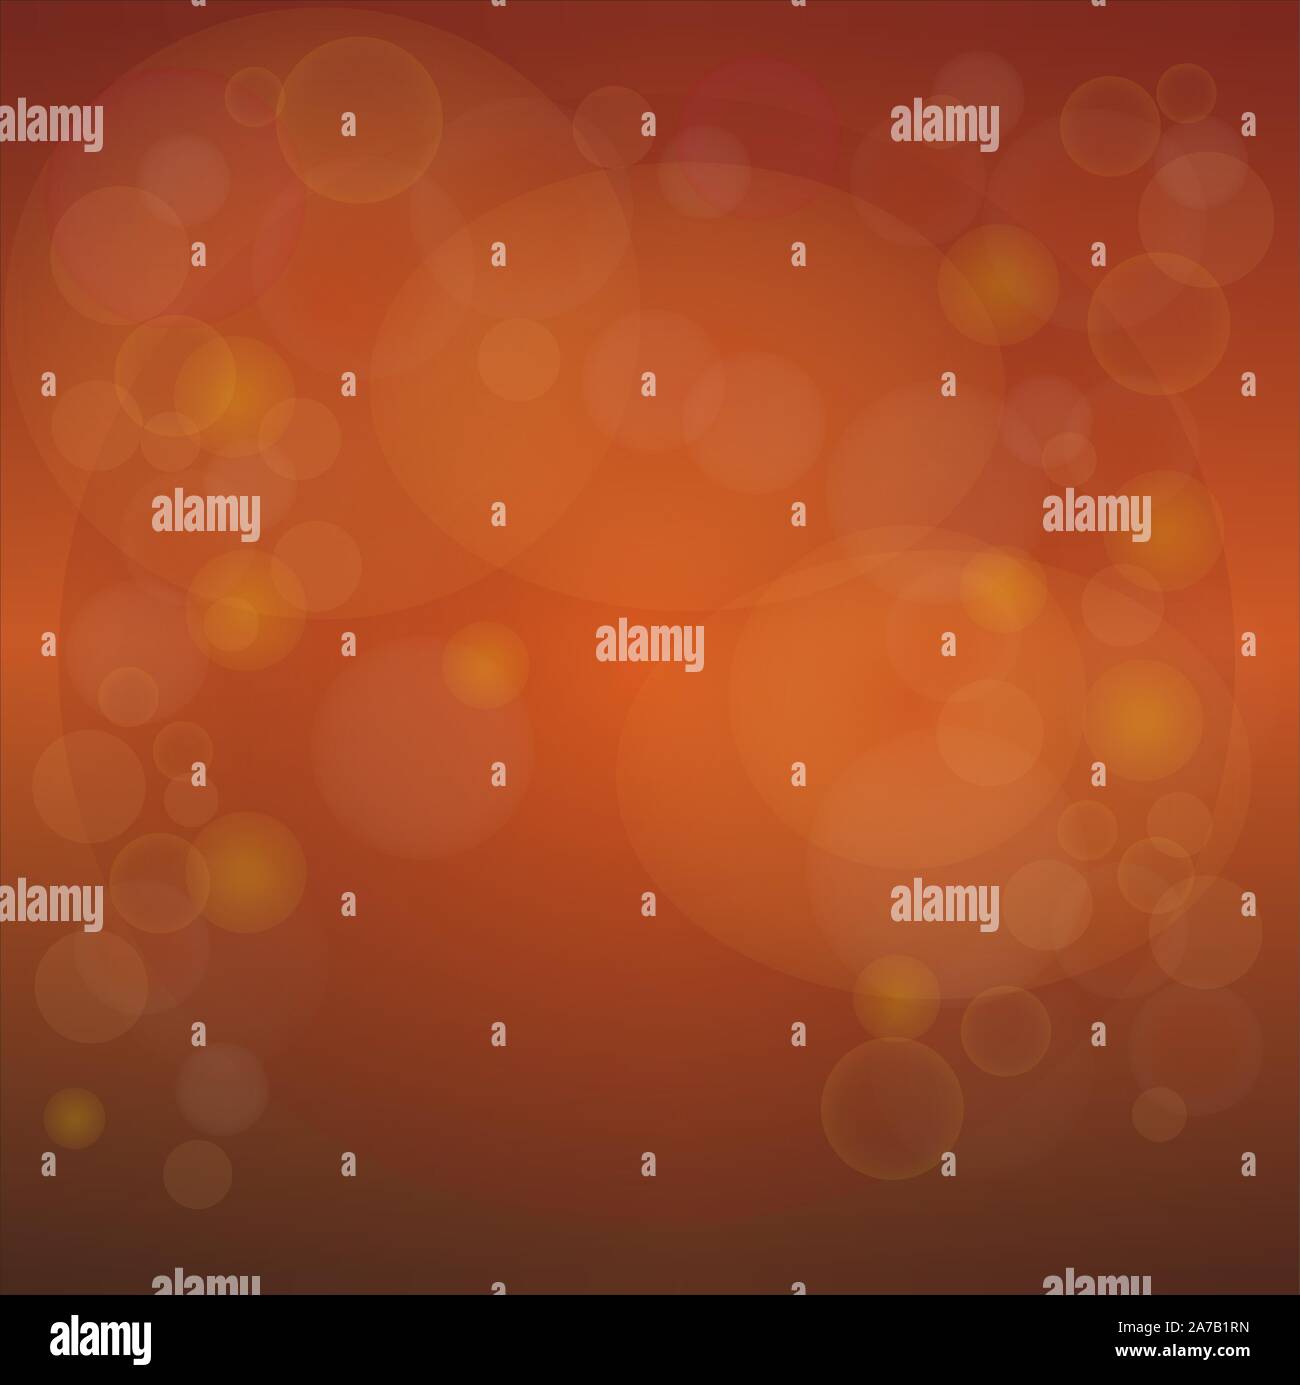 Lumière abstraite fond flou avec lens flare dots en vecteur d'orange Illustration de Vecteur